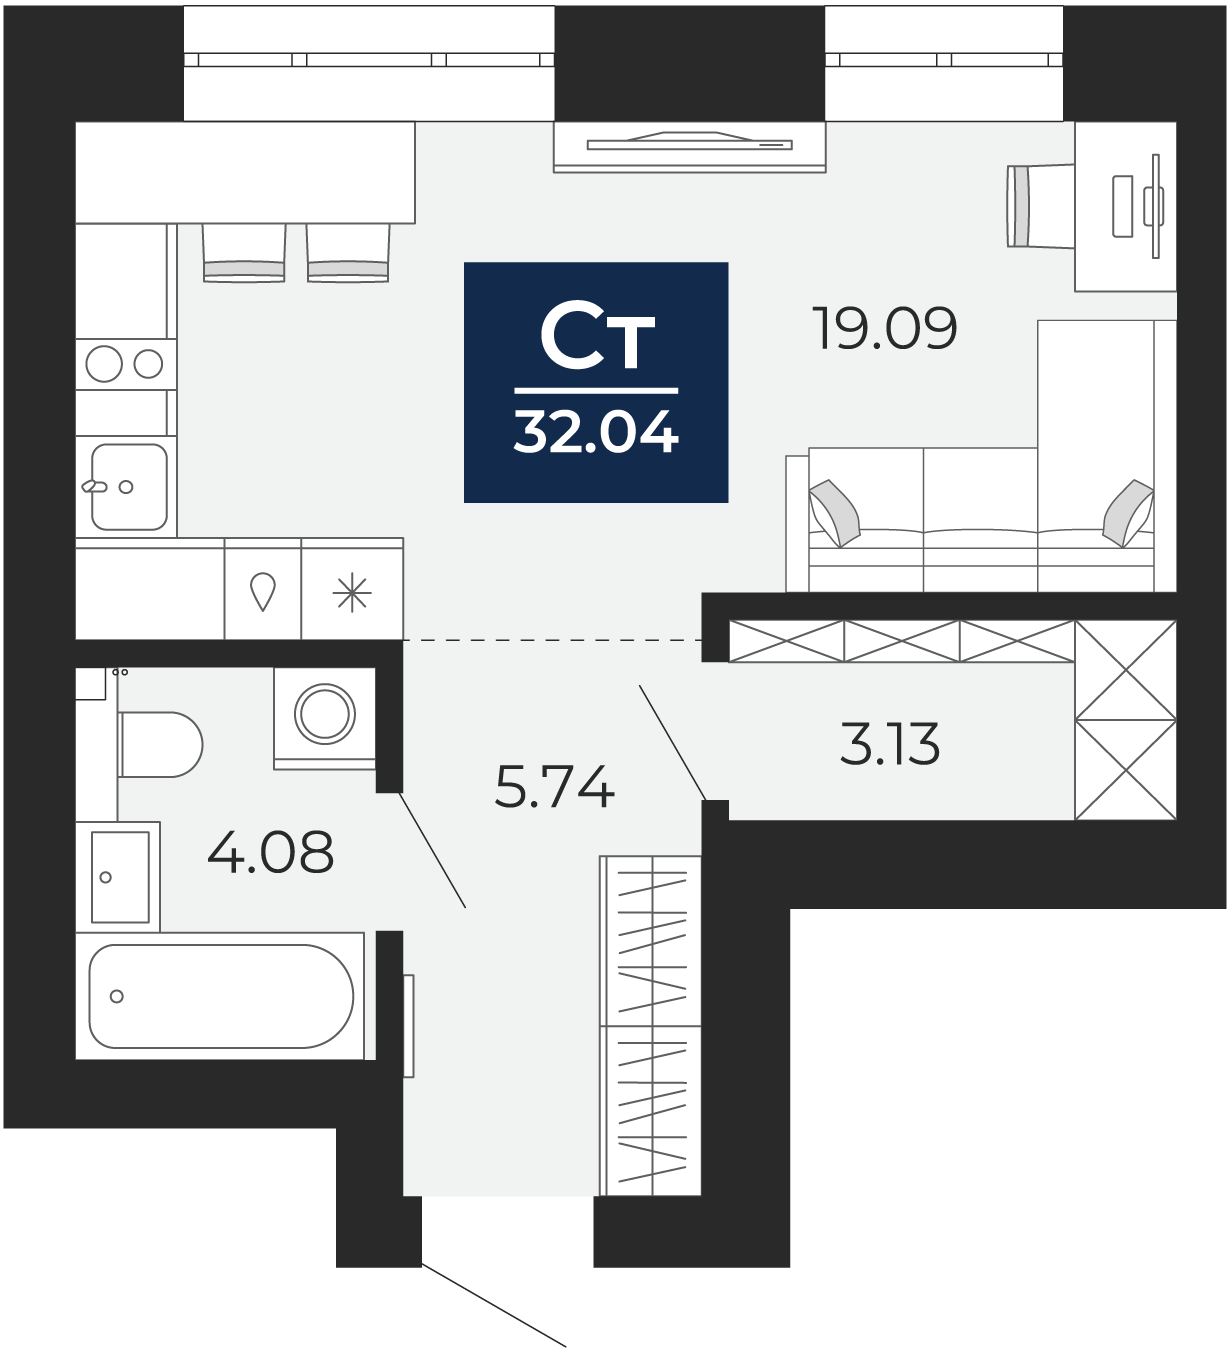 Квартира № 11, Студия, 32.04 кв. м, 3 этаж